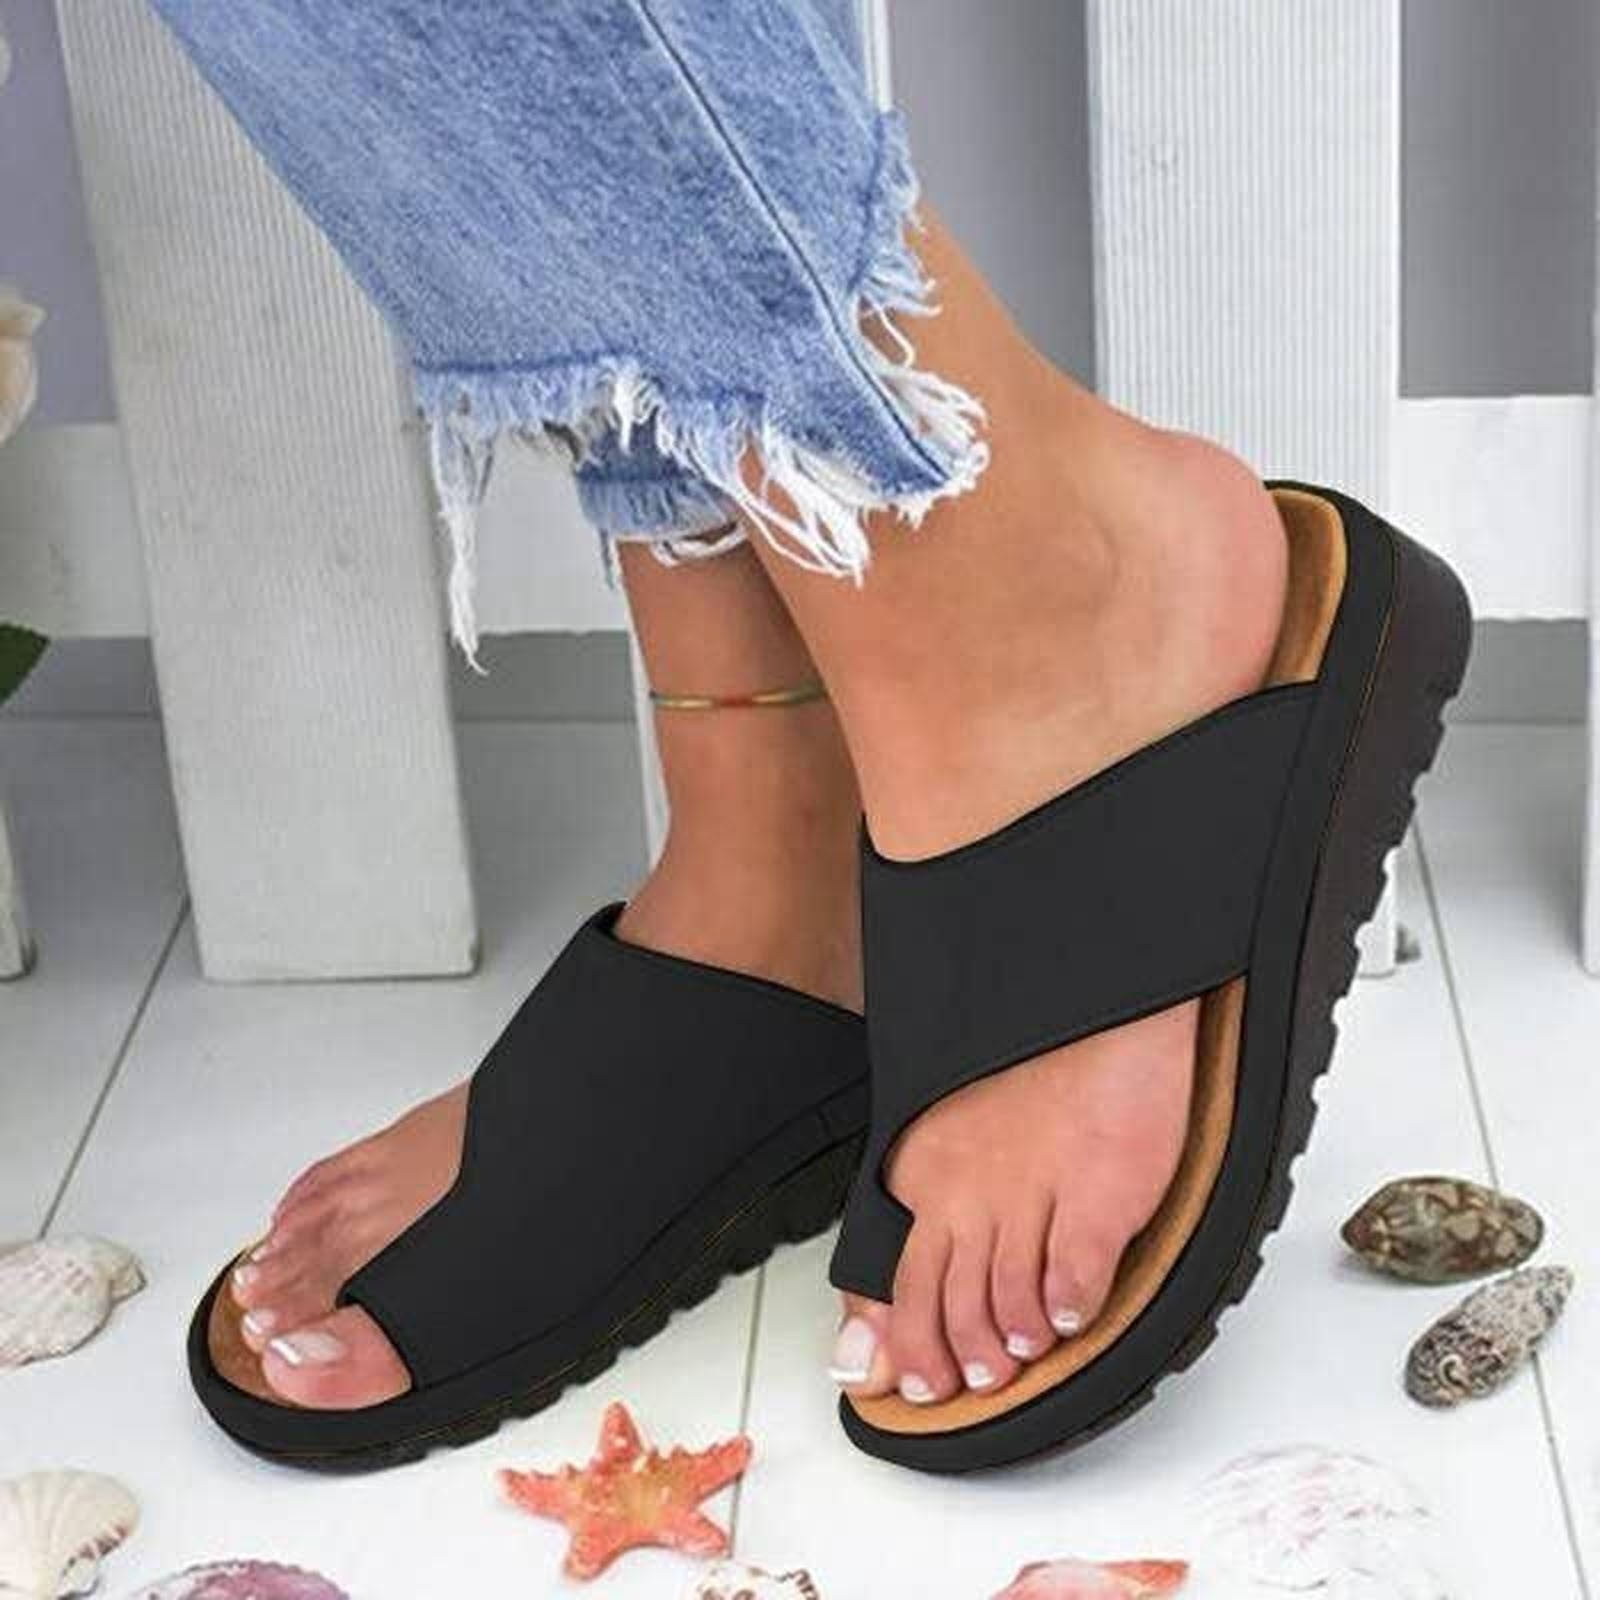 VerPetridure for Women Platform Sandal Shoes Comfortable Ladies Shoes Summer Beach Travel Shoes Sandals - Walmart.com